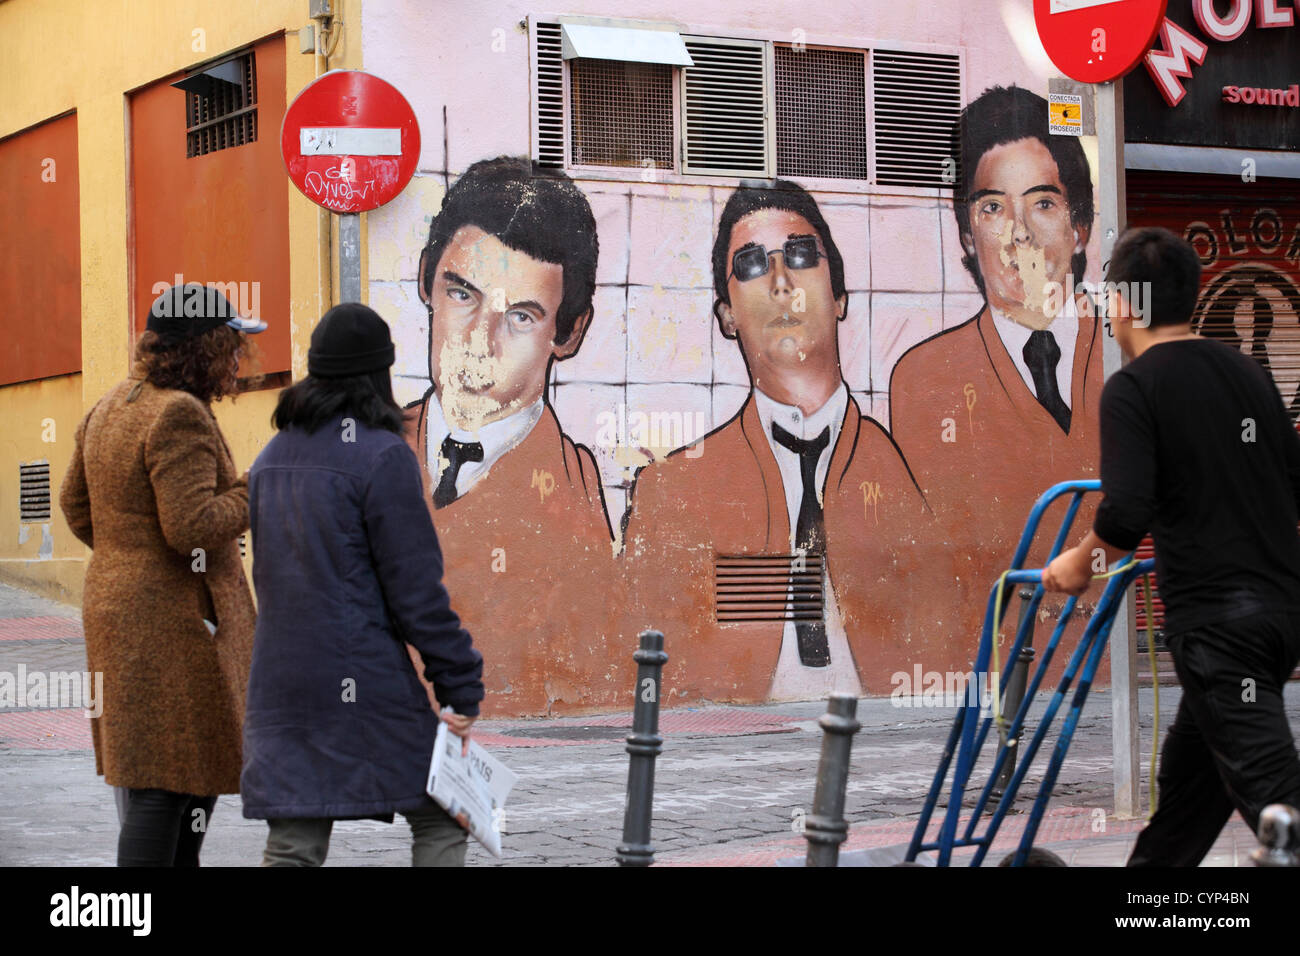 Alten Wandbild, Darstellung der Mitglieder von The Jam, 1970er Jahre mod Band, Paul Weller, Madrid, Spanien Stockfoto